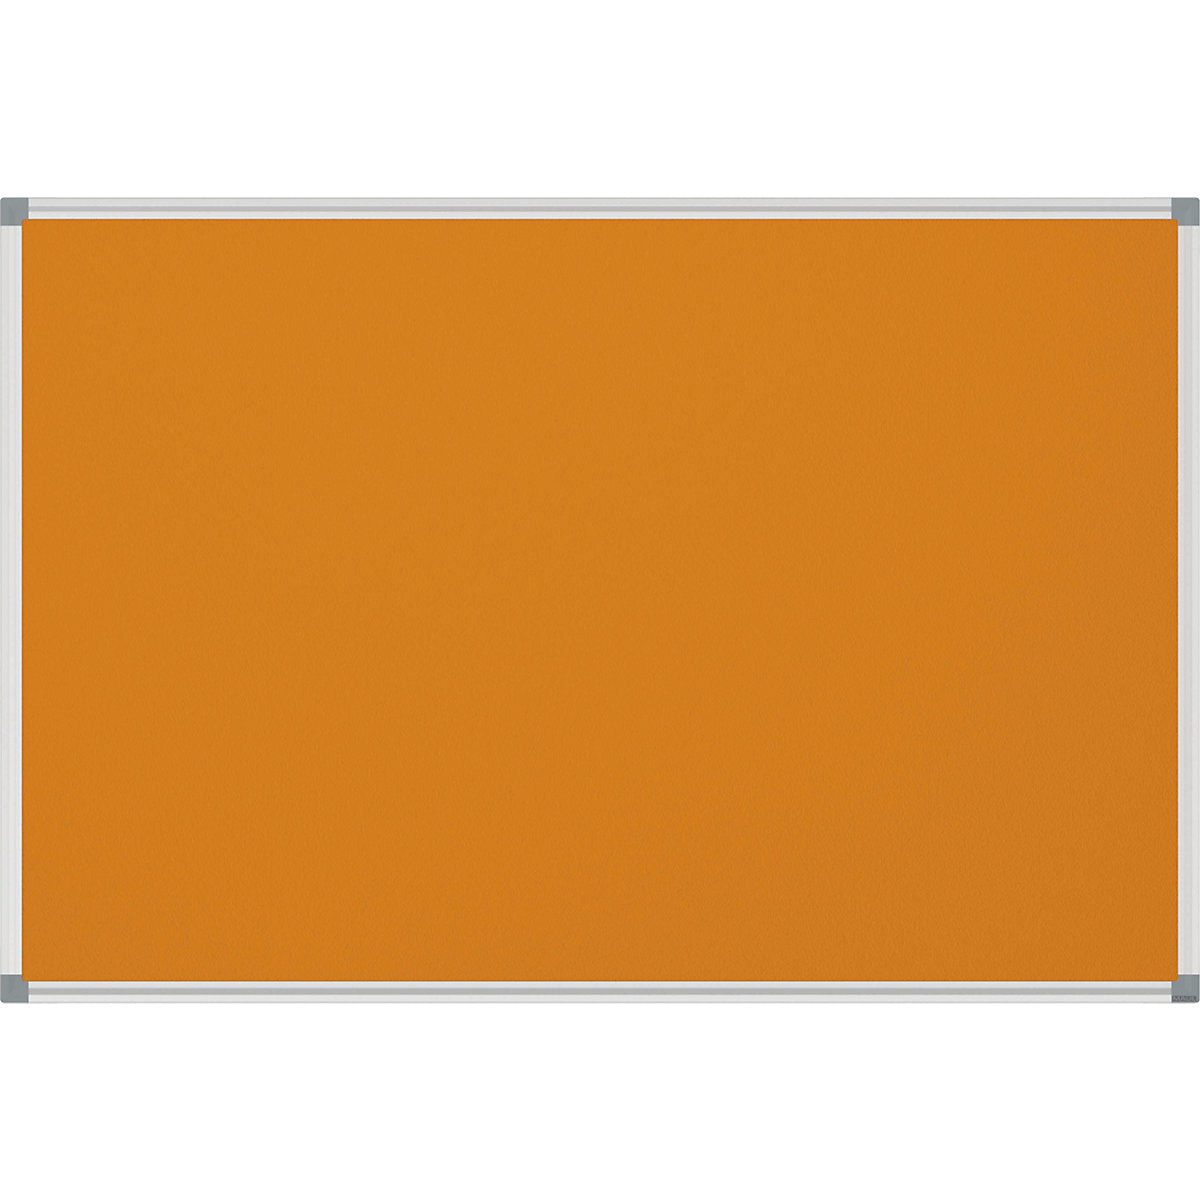 MAUL – Nástěnka STANDARD, stabilní, textil, oranžová, š x v 900 x 600 mm